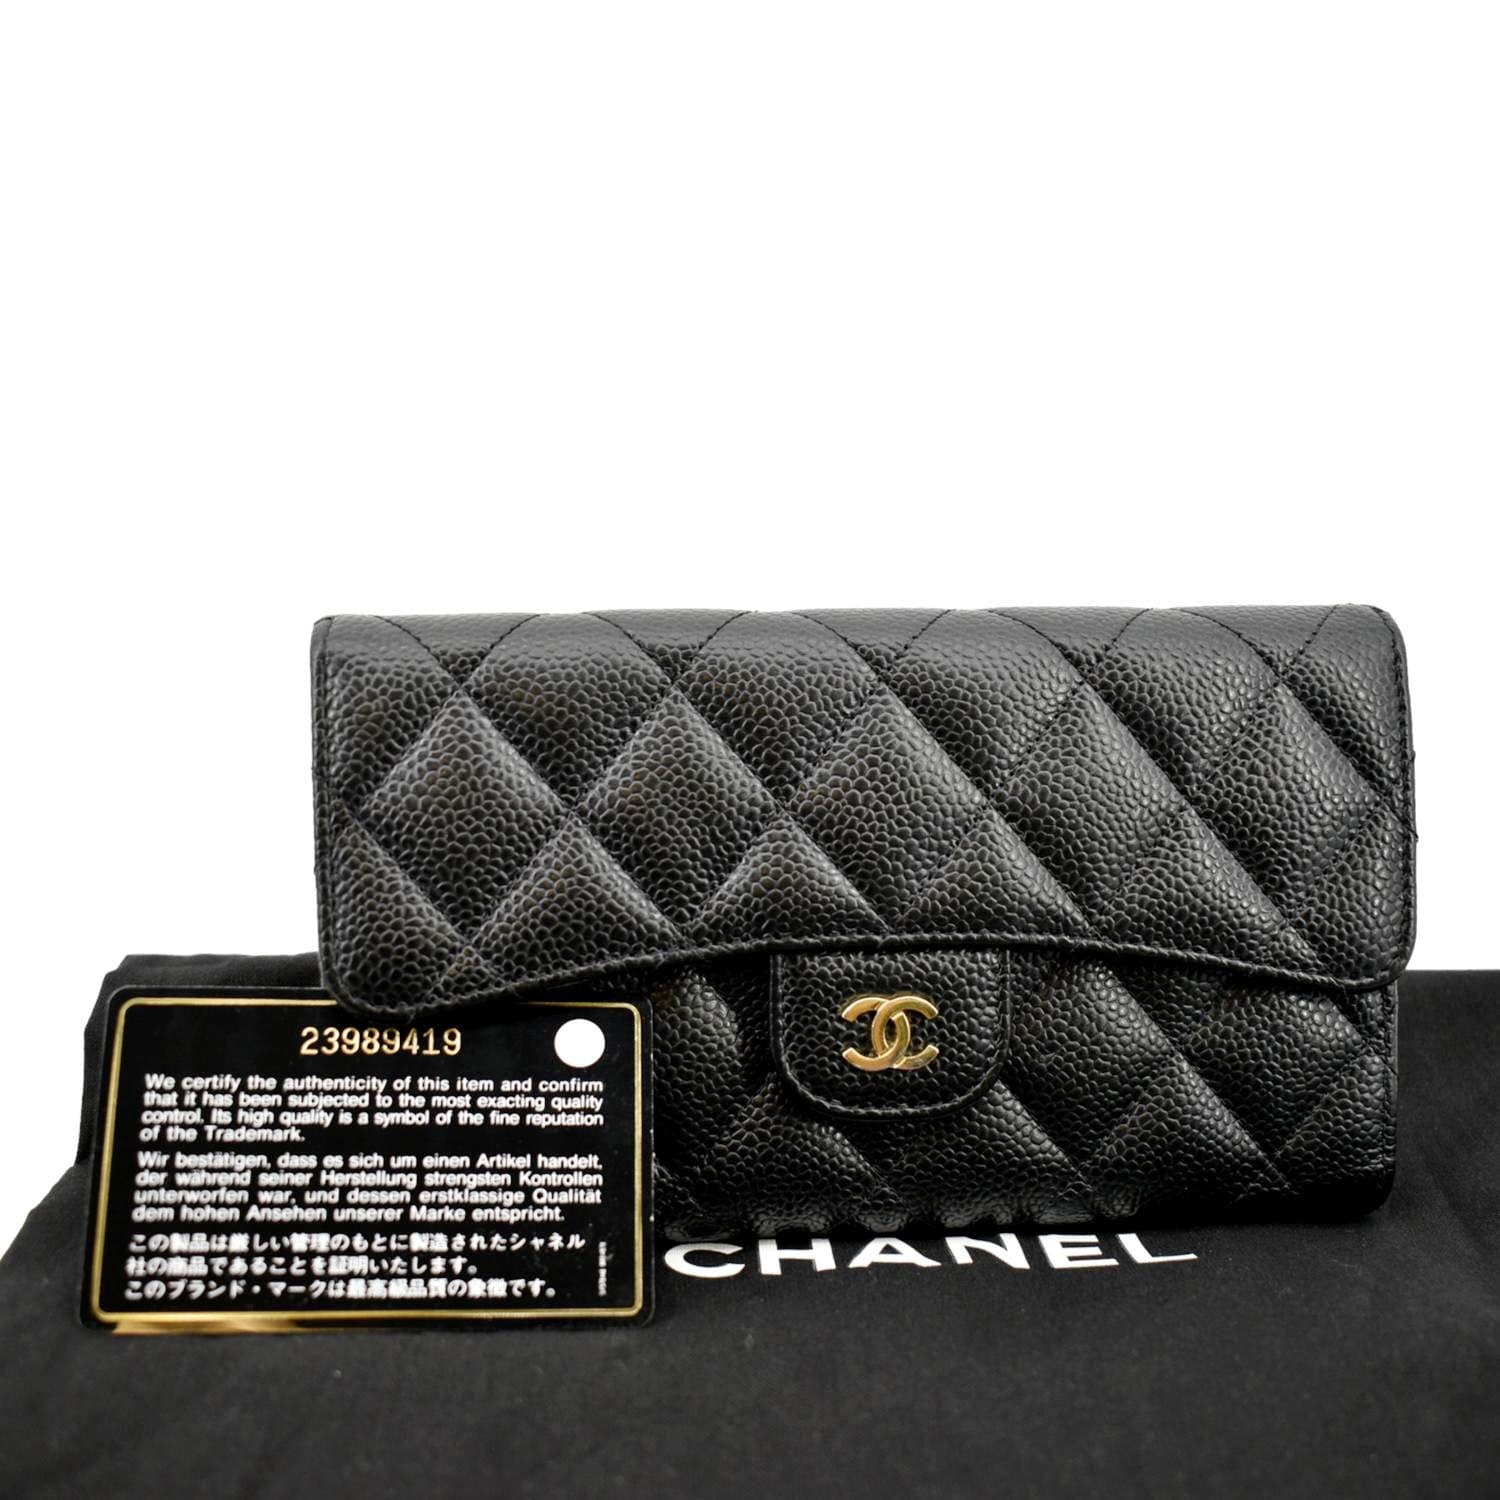 Chanel Black Caviar Small Classic Flap Wallet, myGemma, QA